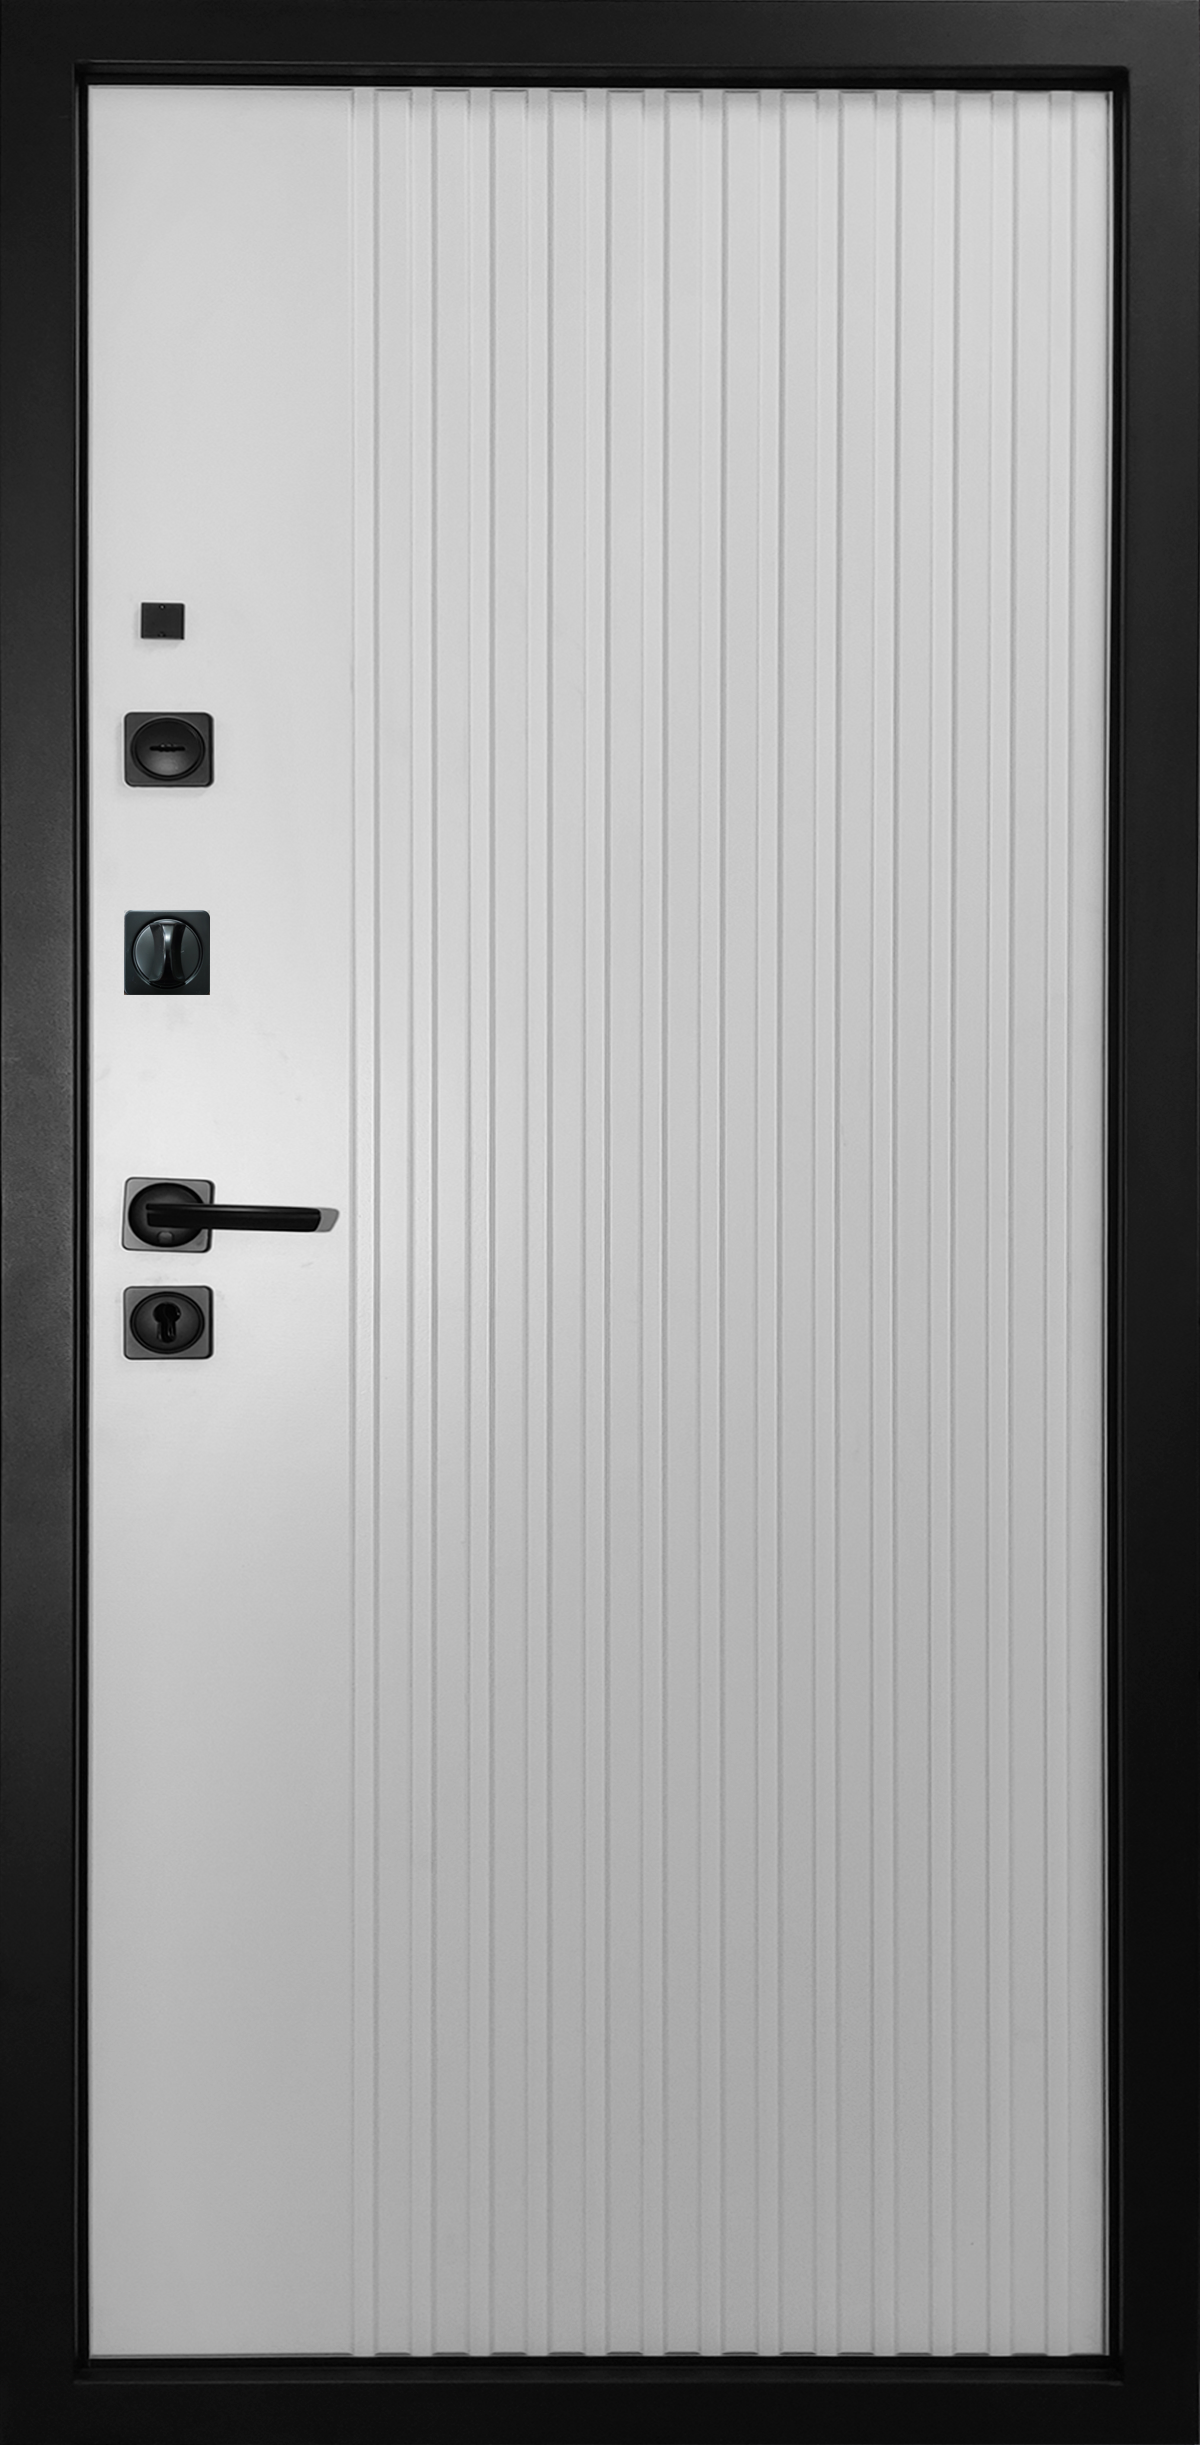 Металлическая дверь «Экстра Ультра». Вид внутренней отделки белая гладкая Cтандартный наличник